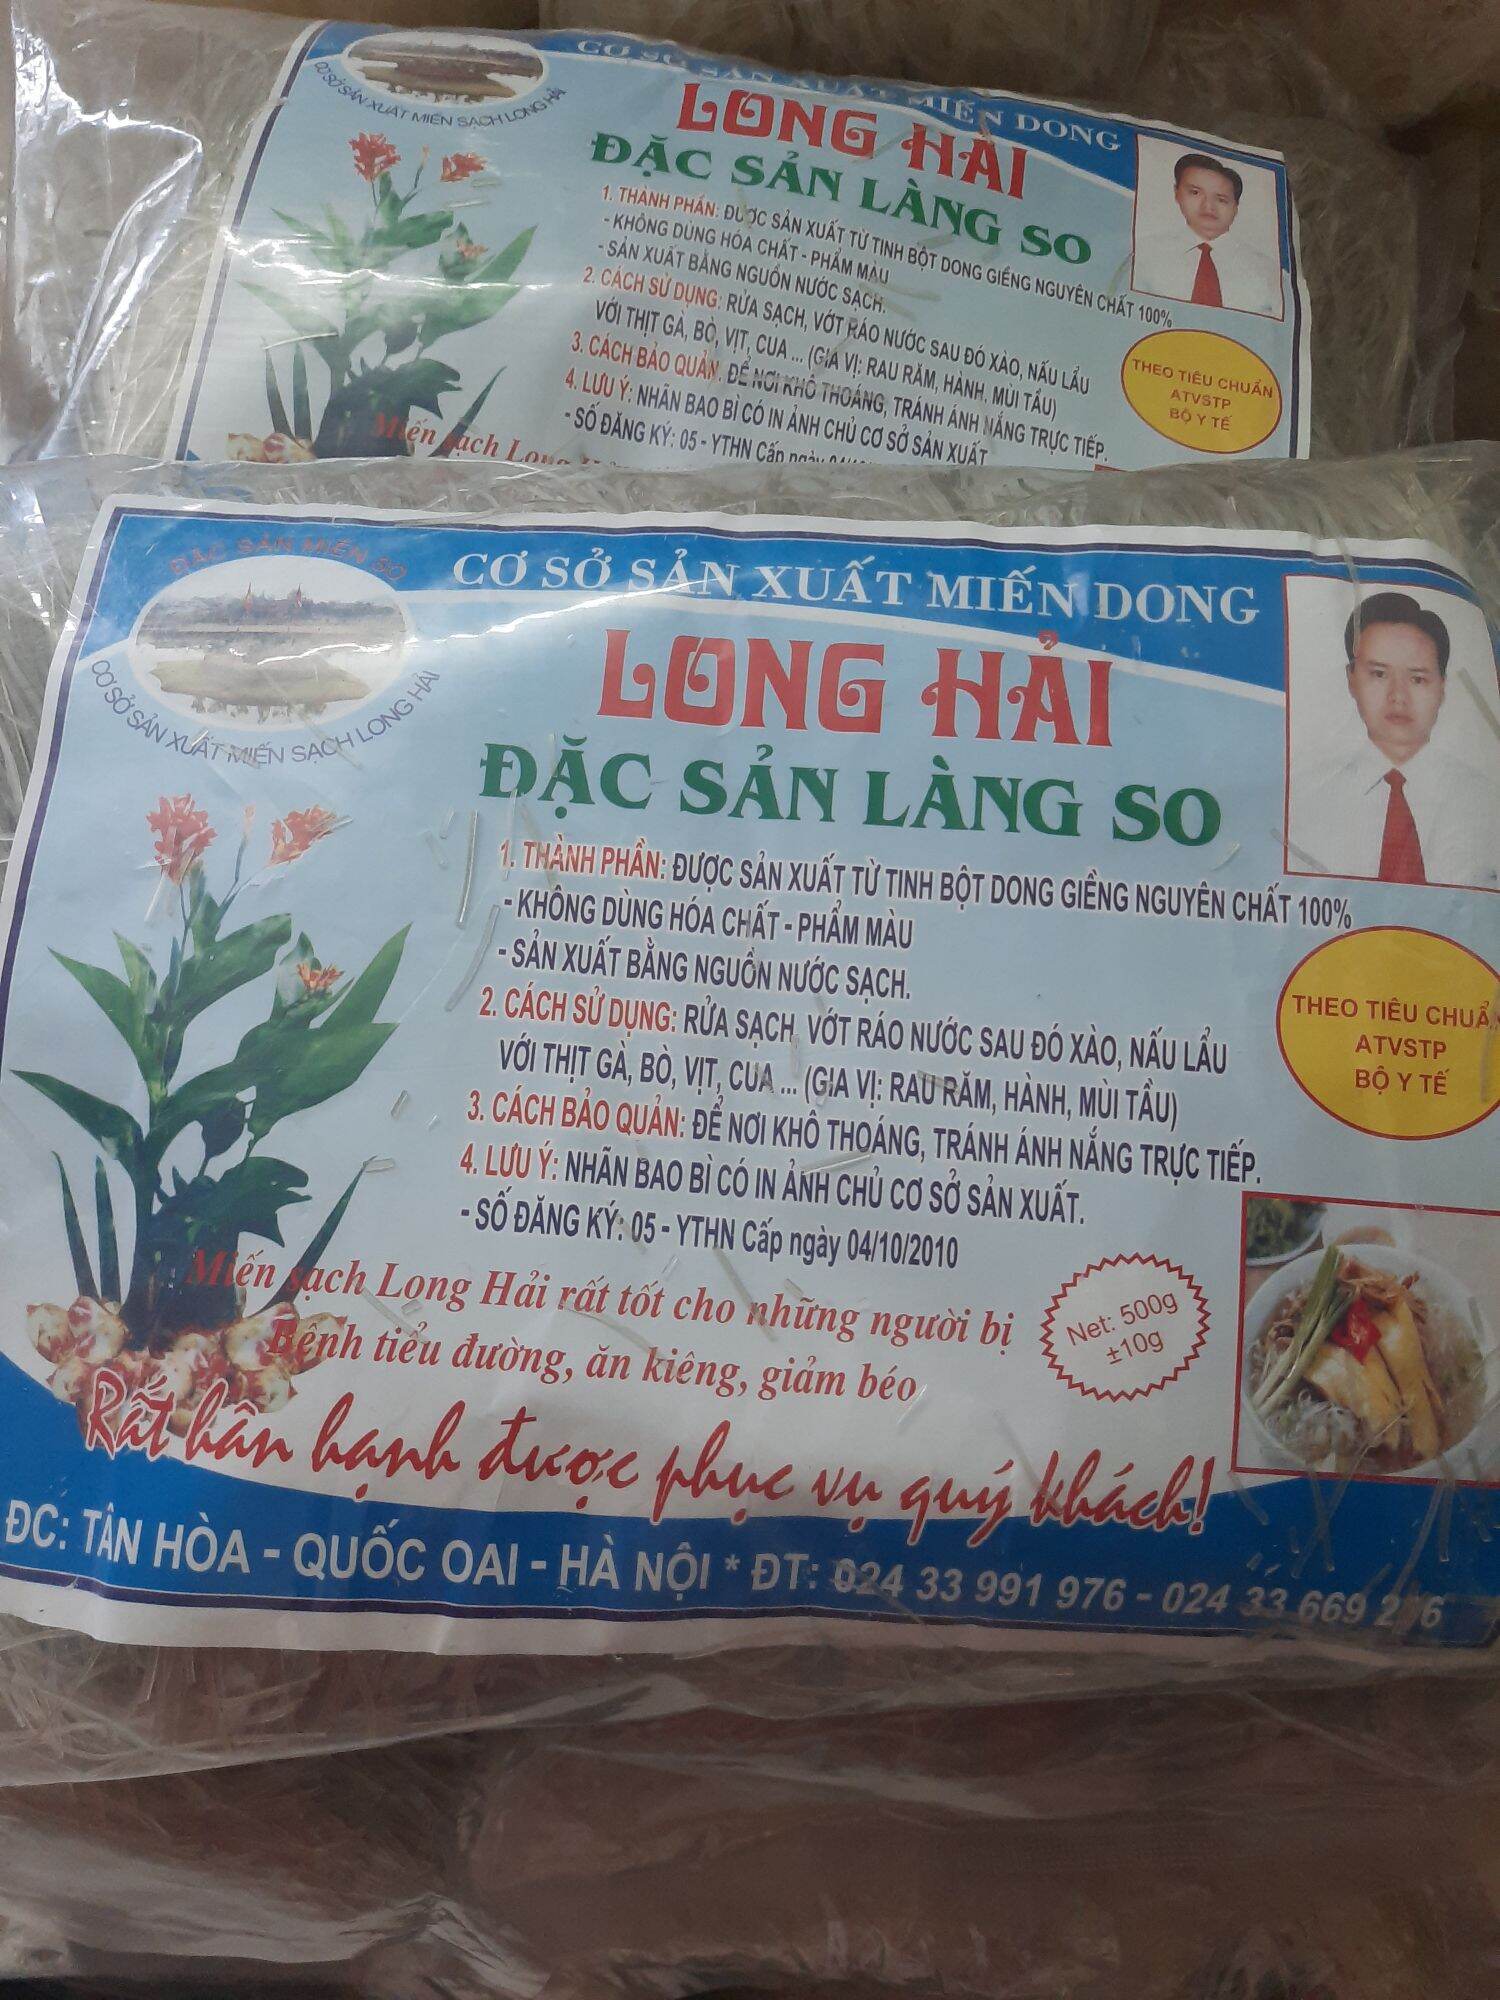 Miến dong Long Hải - đặc sản Làng So